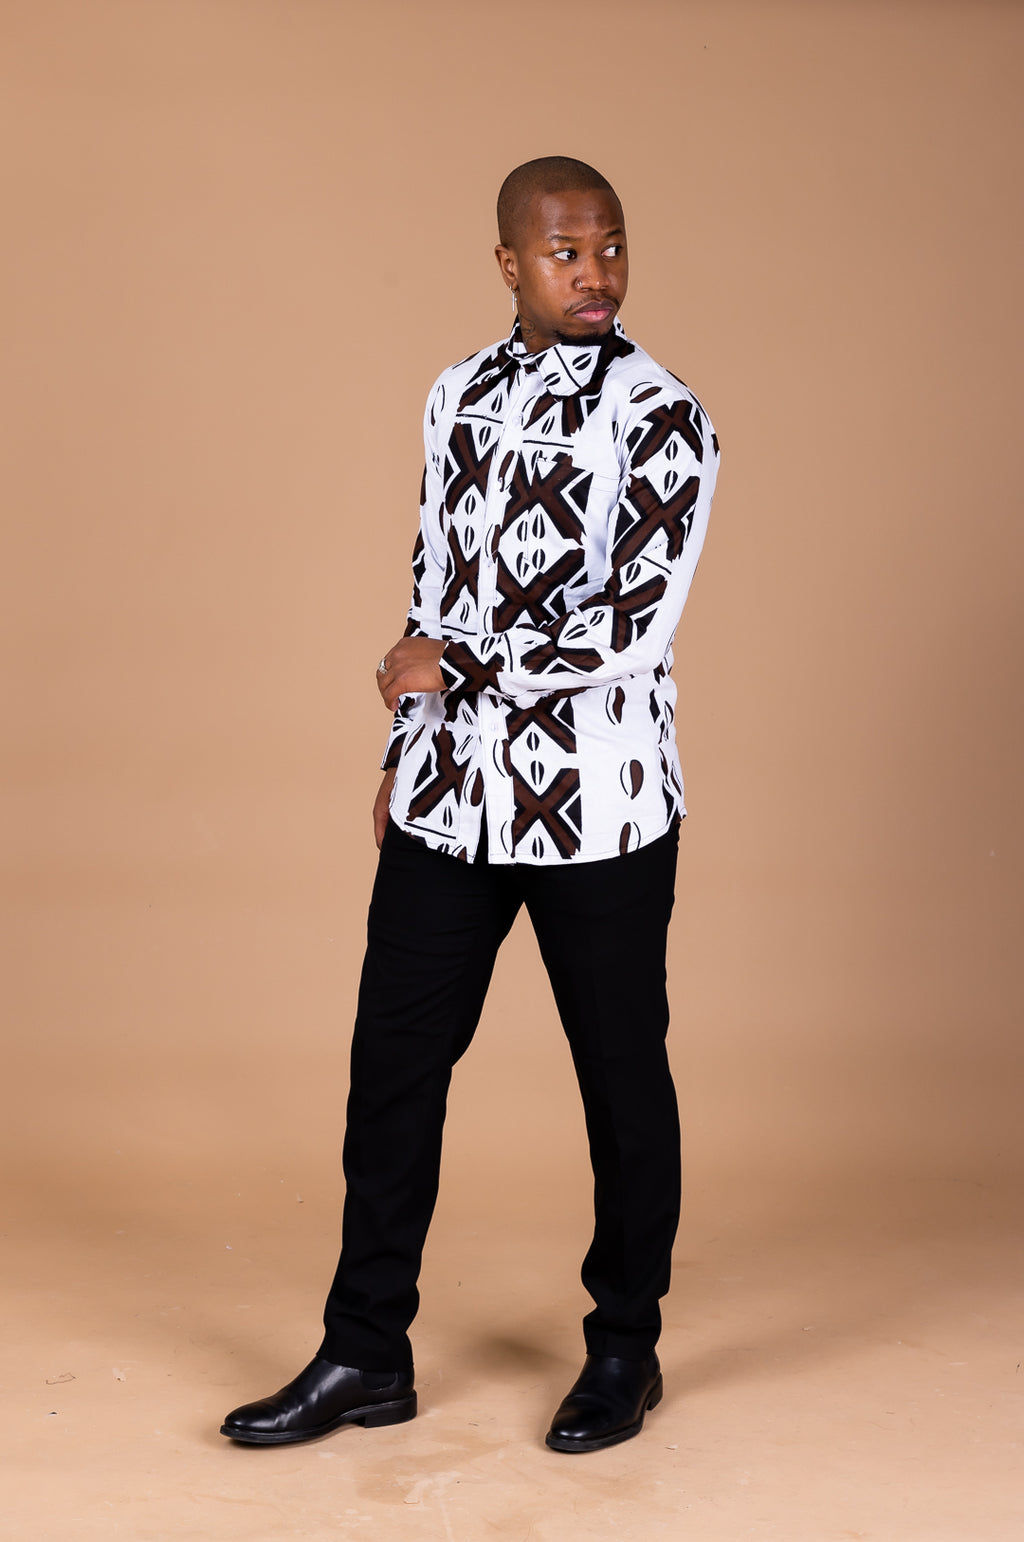 Tunji Ankara Men Long-sleeved  Shirt | Black and White African Ankara Print